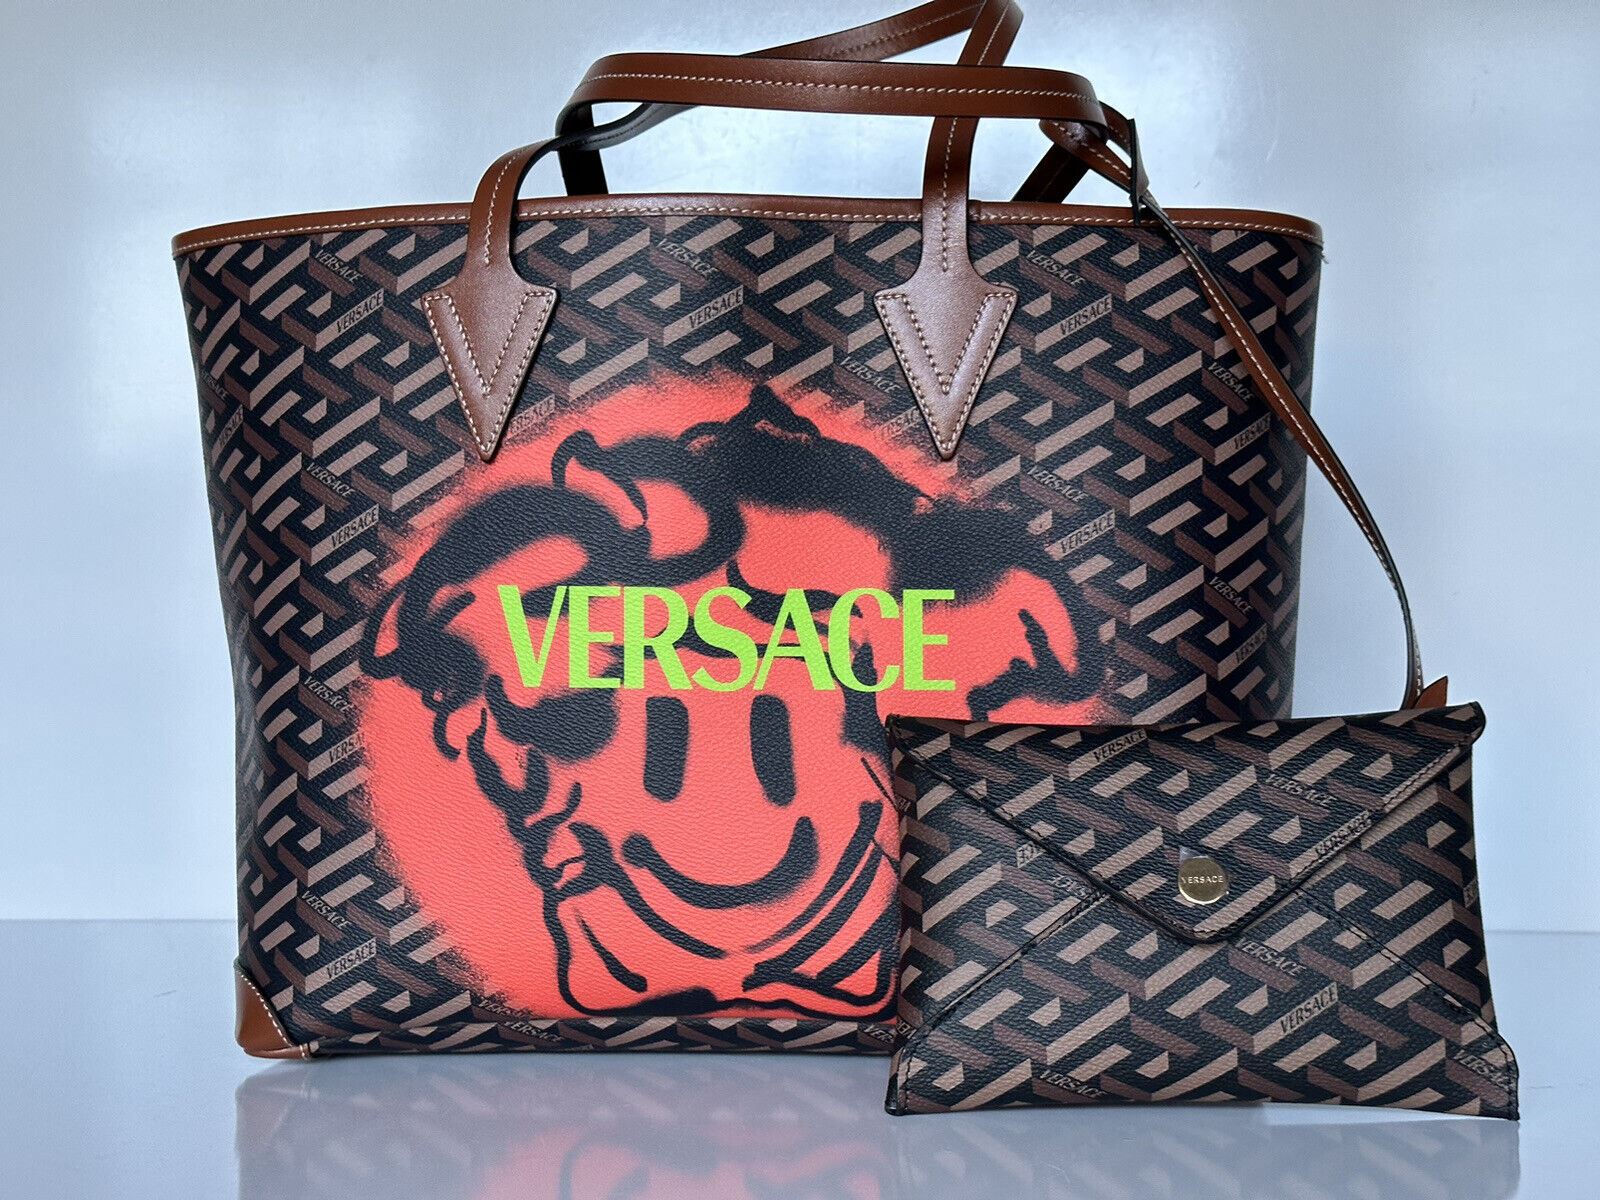 NWT Versace Большая сумка Greca Signature Smiley Medusa со съемным чехлом IT 1008109